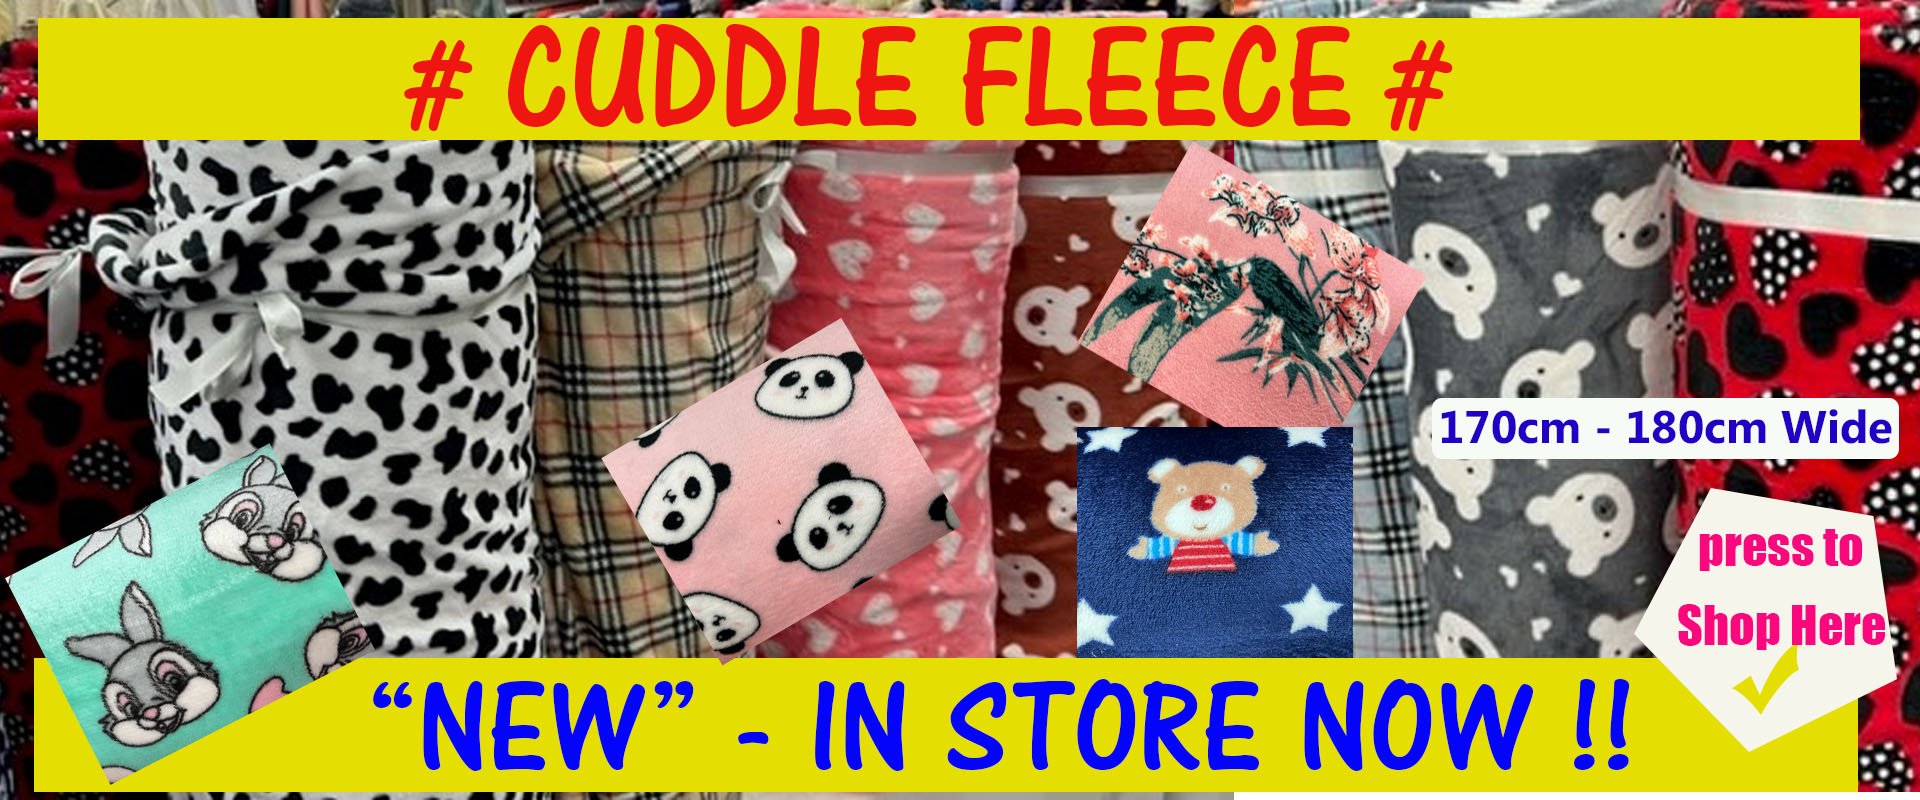 Cuddle fleece 1